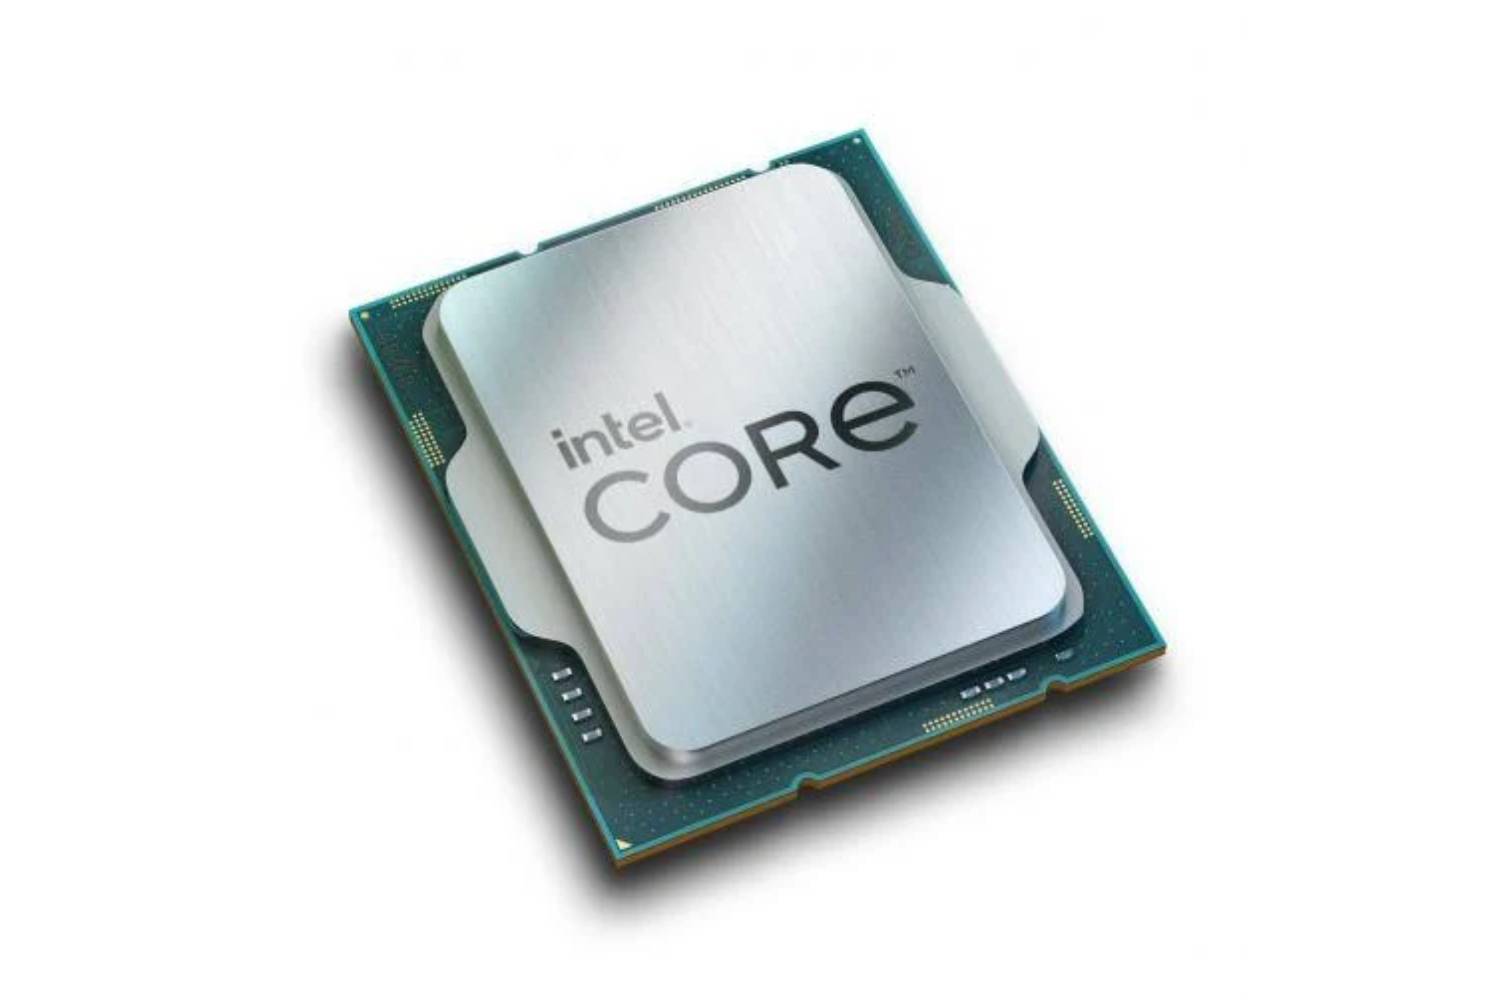 Intel core i9 12900k 12th Generation CPU-CPU-INTEL-computerspace